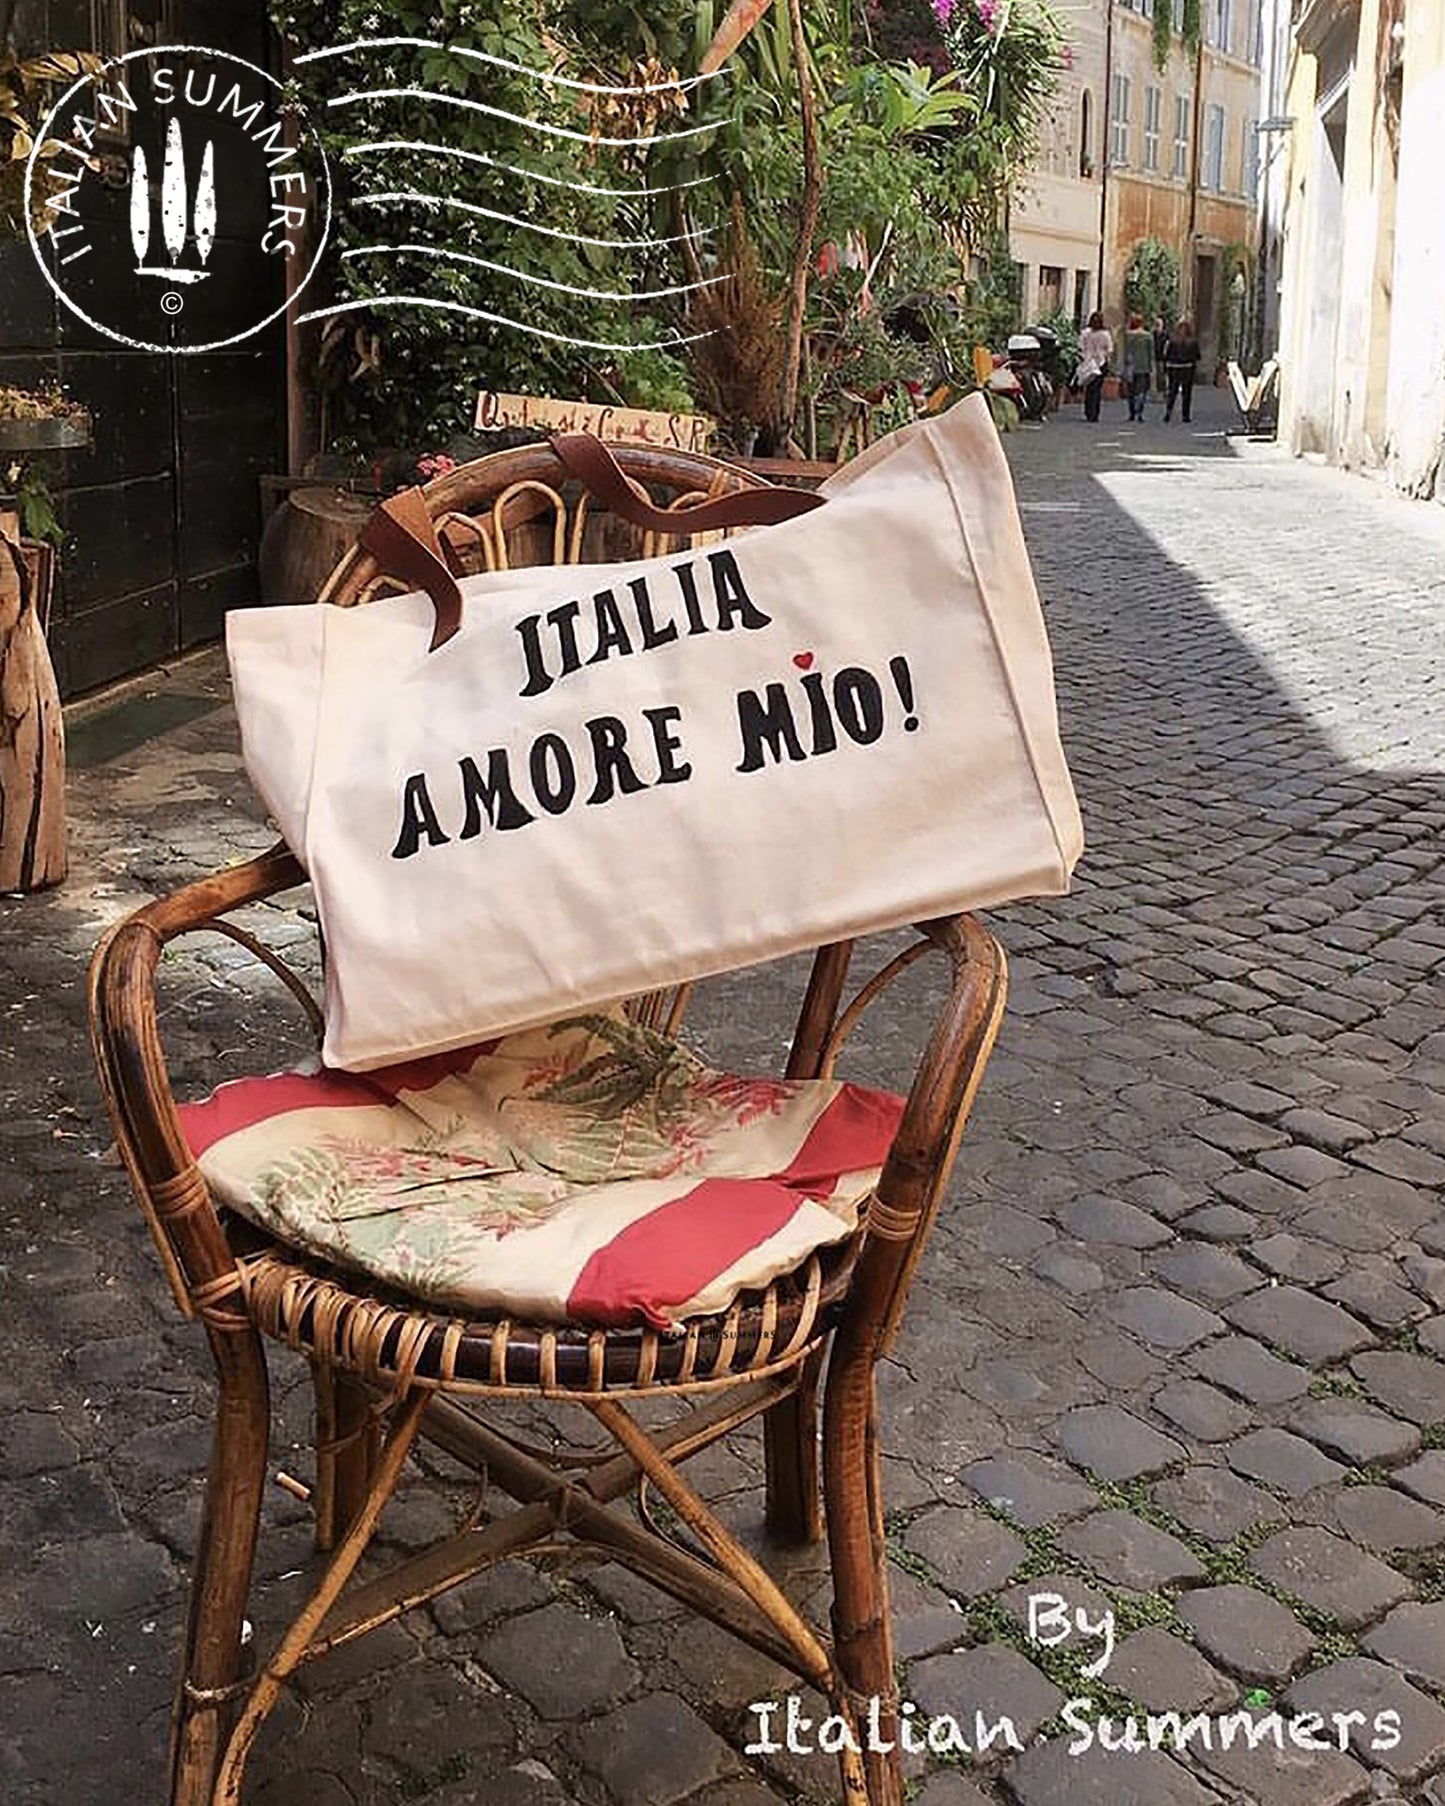 Italy Tote Bag ITALIA AMORE MIO, beach shopper